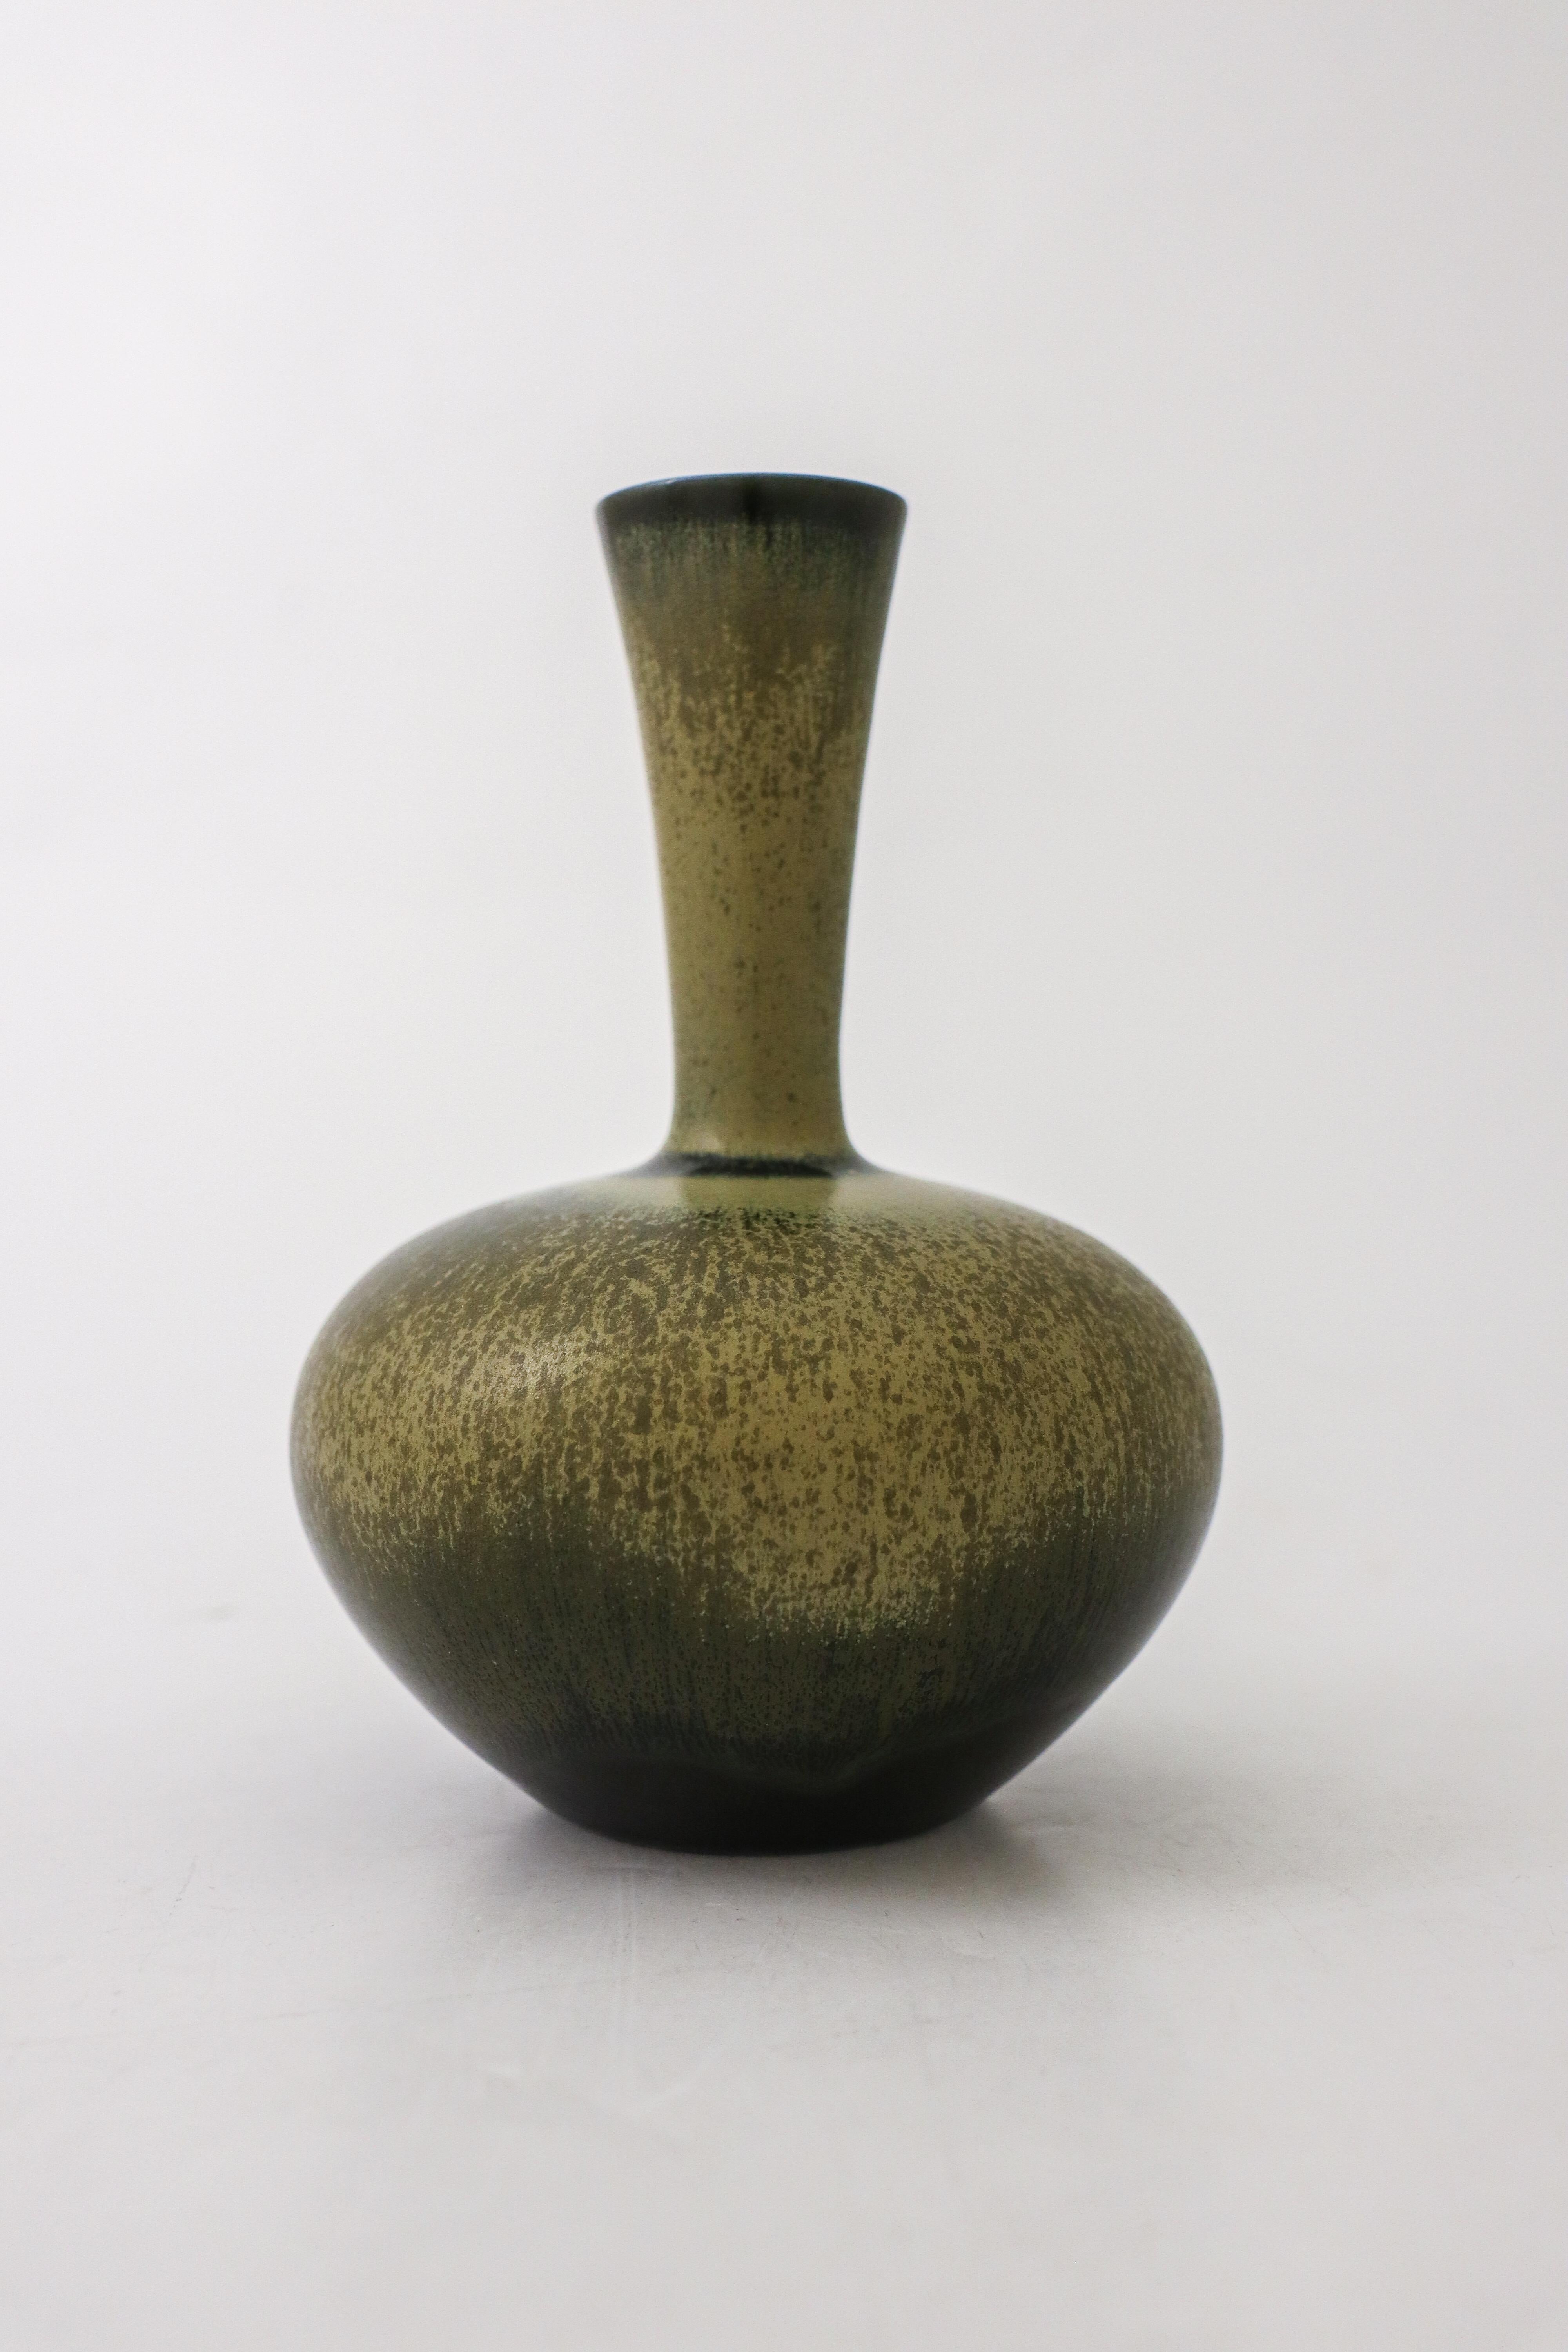 Eine schöne dunkelgrüne Vase mit einer HAR-Pelzglasur, entworfen von Sven Wejsfelt bei Gustavsberg in Stockholm im Jahr 1986. Die Vase ist 16,5 cm hoch. Es ist wie auf dem Bild gekennzeichnet. Der Spiegel ist in ausgezeichnetem Zustand.